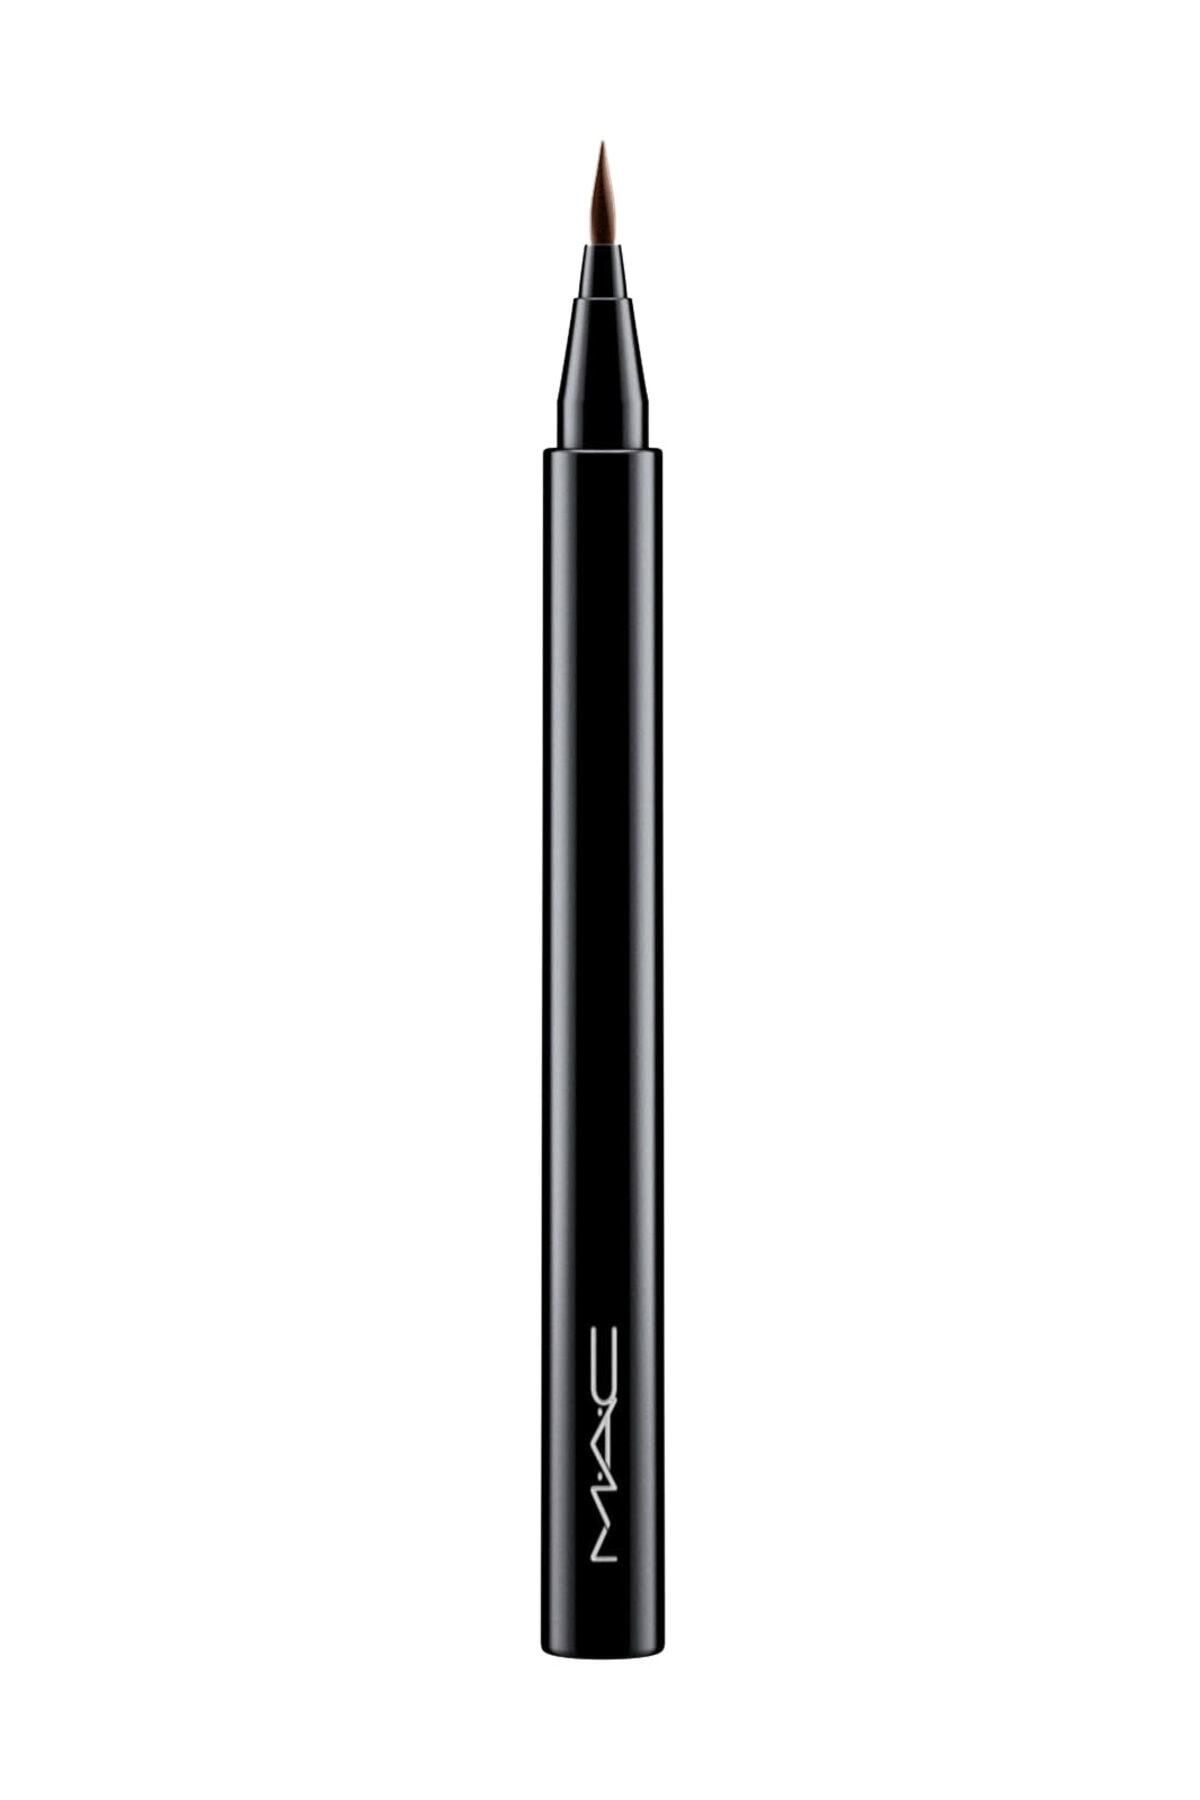 Mac Eyeliner - Brushstroke 24-Hour Eyeliner Brushbrown 773602543885